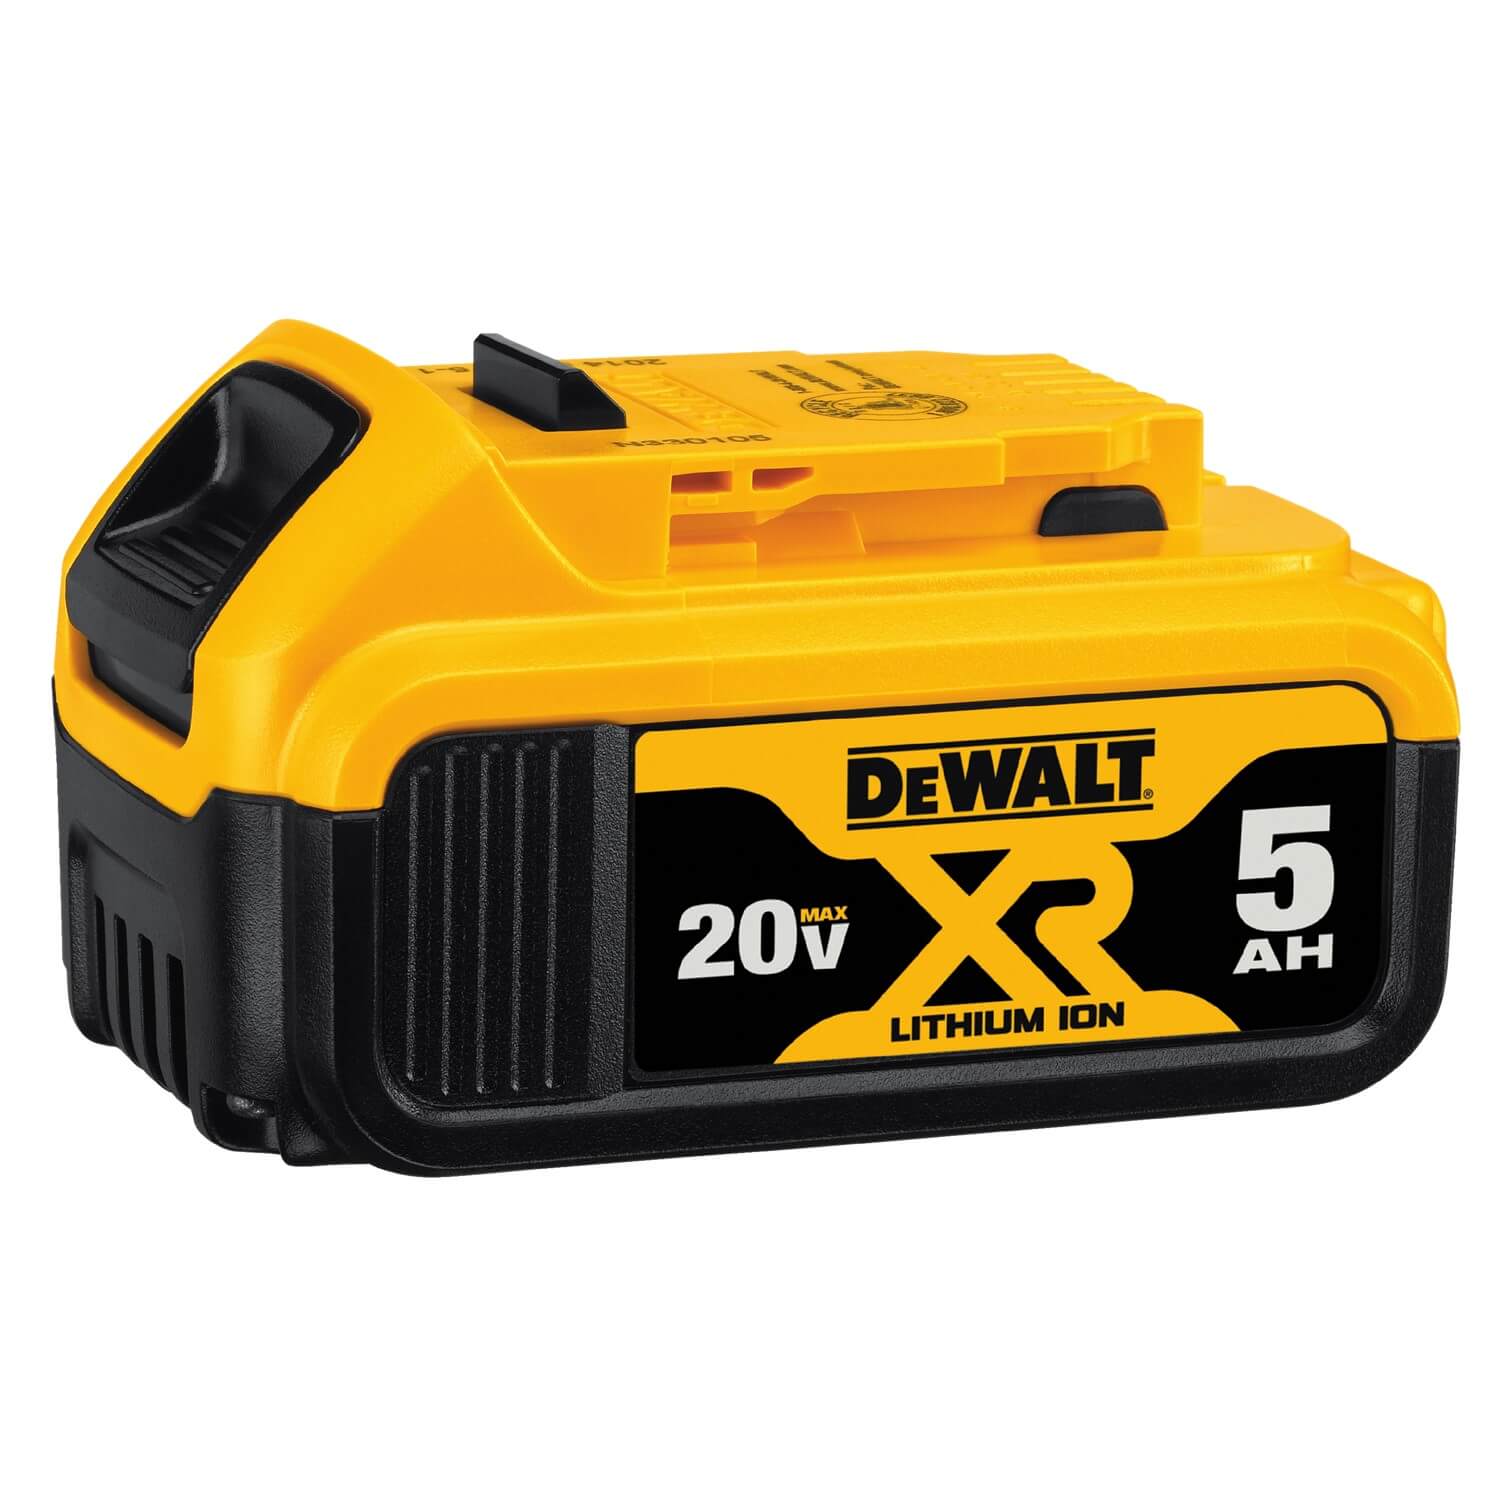 DEWALT, » DEWALT DCB205 20V MAX XR 5.0Ah Lithium Ion Battery-Pack (100% off)